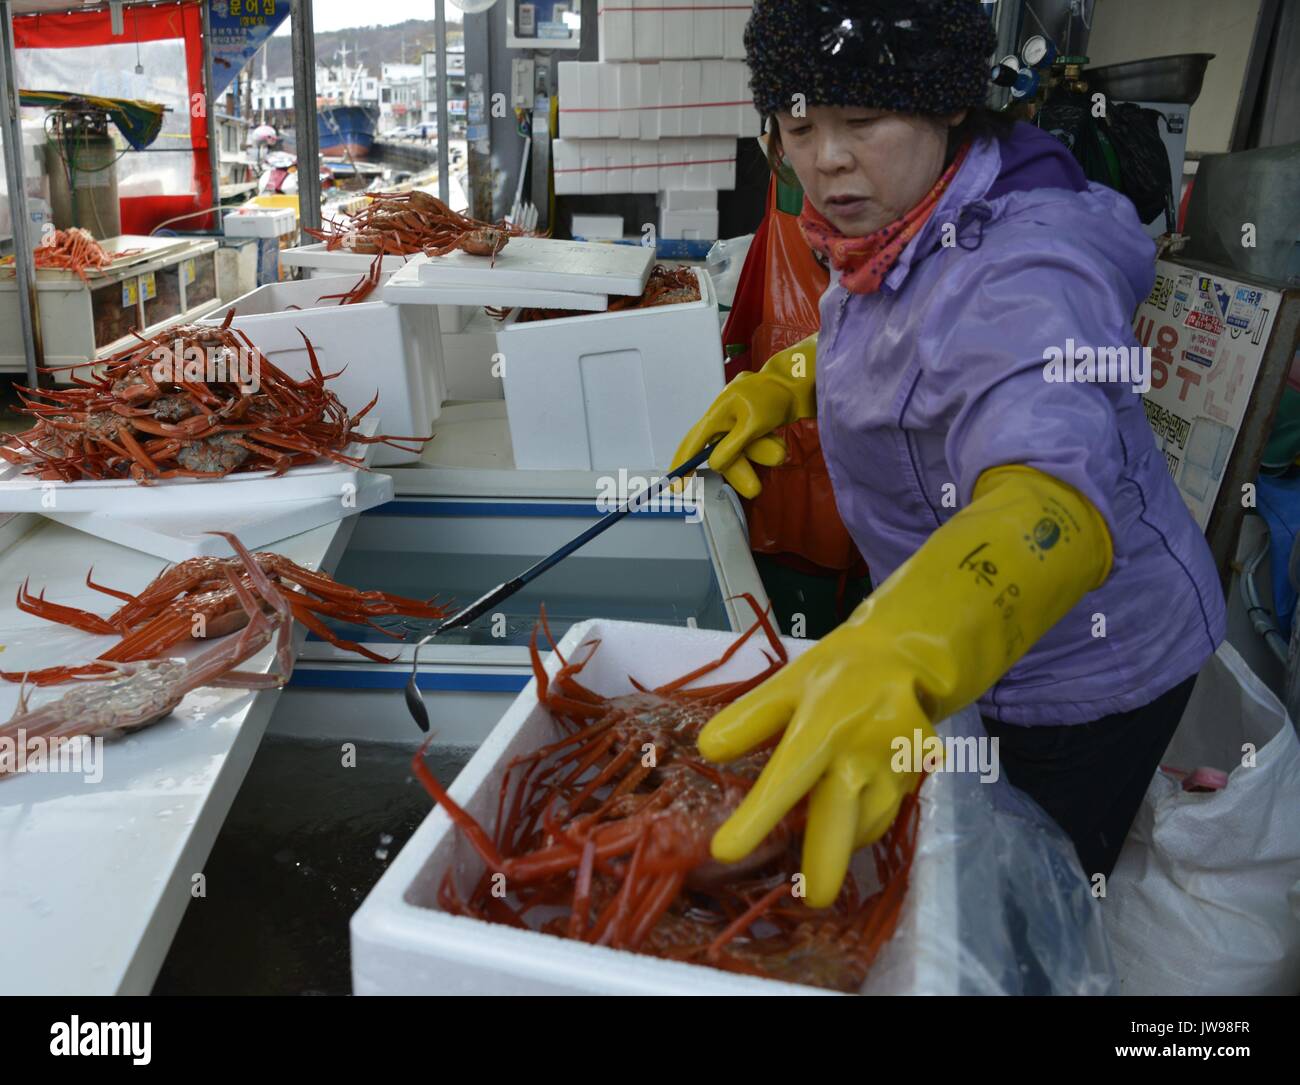 Un vendeur remplit une boîte avec des crabes des neiges au port de la côte Est de la Corée du Sud en Yeongdeuk Ganggu, près de port, de Corée du Sud, le 20 mars 2013. La consommation de poissons, algues et autres produits font partie de la culture culinaire de la Corée. La collection, au service et à la vente de ces produits de la mer sont le moteur de l'économie dans de nombreux petits villages de pêcheurs côtiers de Corée, où l'autobus bondés de touristes nationaux voyage à manger fraîche au bord de la mer. Connu pour ses prestations-maladie acquise dans le légume de mer naturel riche en minéraux et vitamines, la production d'algues de la Corée du Sud les lecteurs culture aqua l'industrie. D'utilisation | worldw Banque D'Images